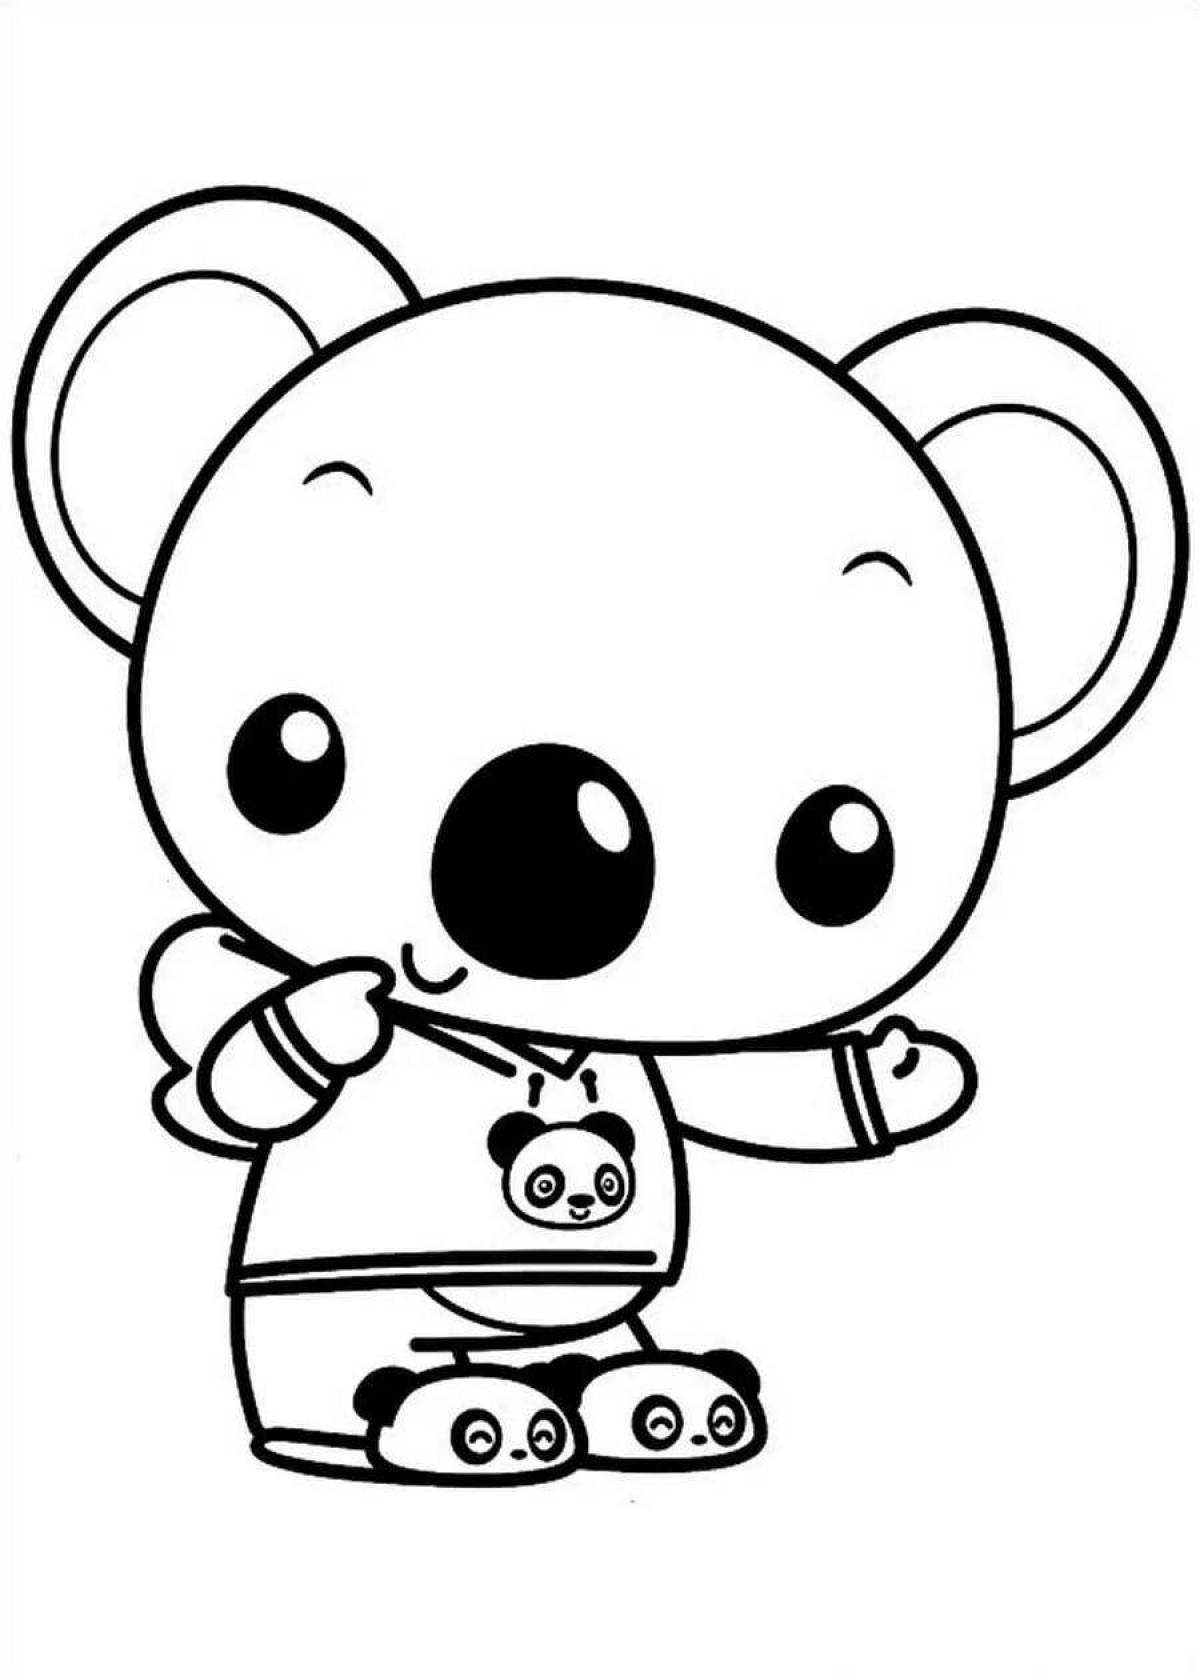 Blissful cute panda coloring book